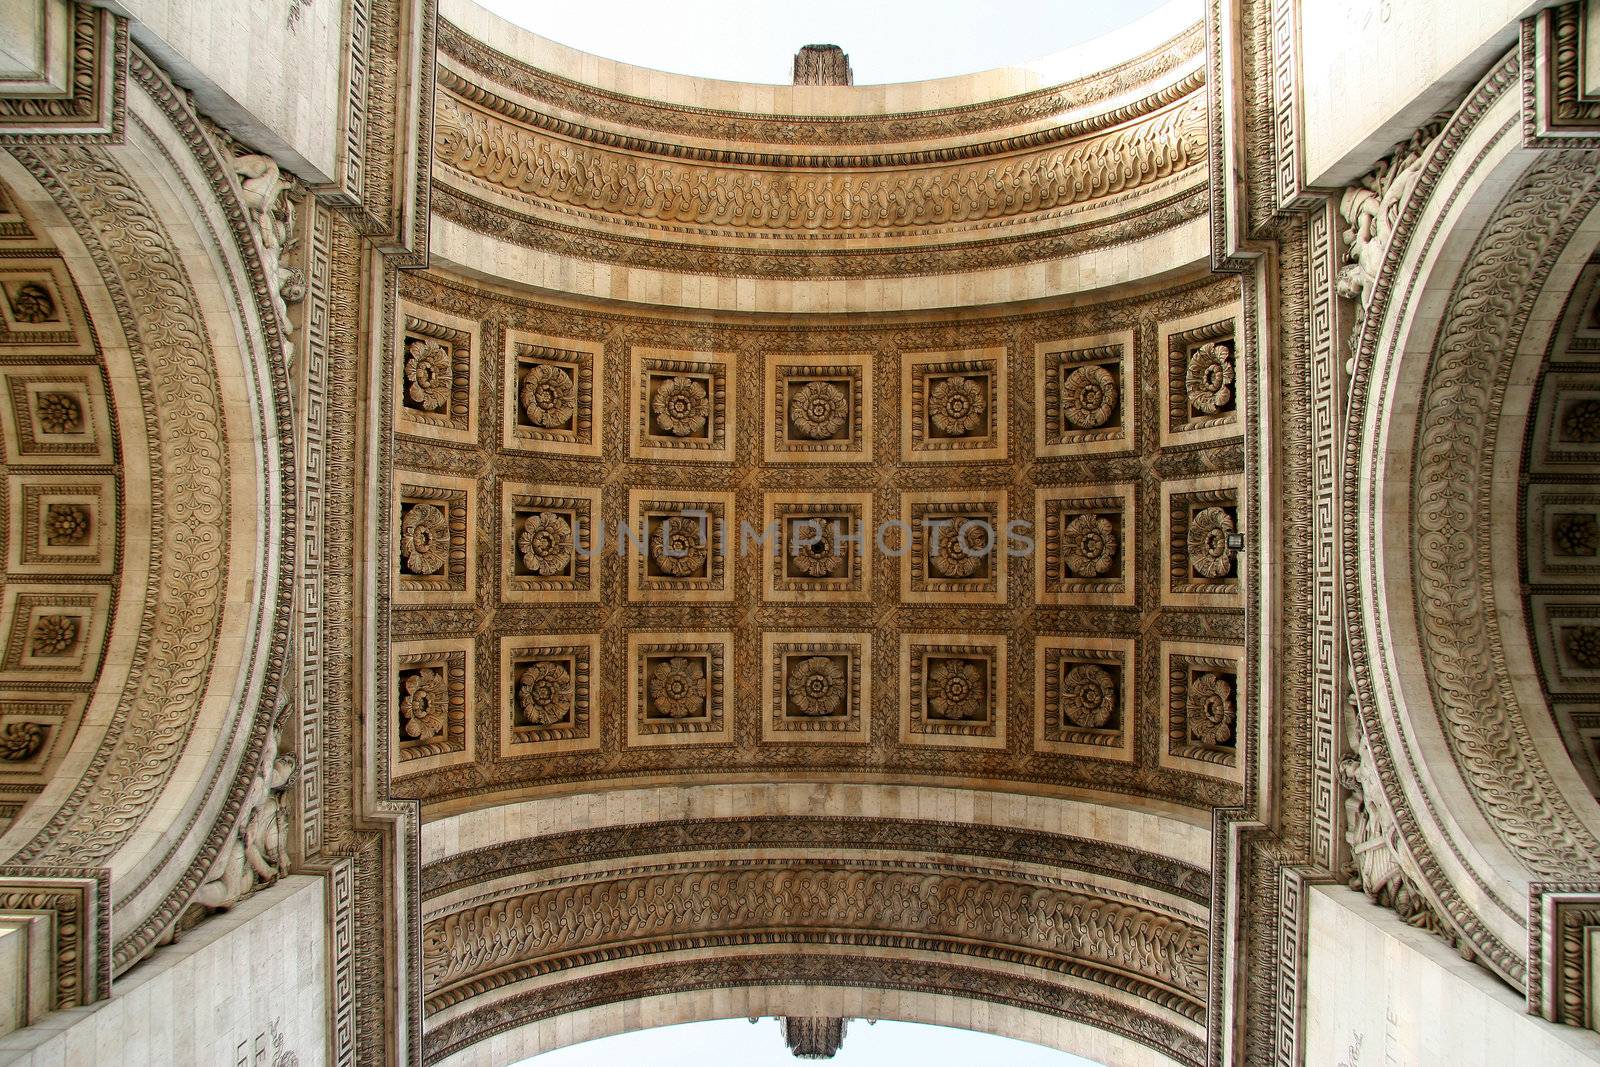 Arc de Triomphe
Paris France